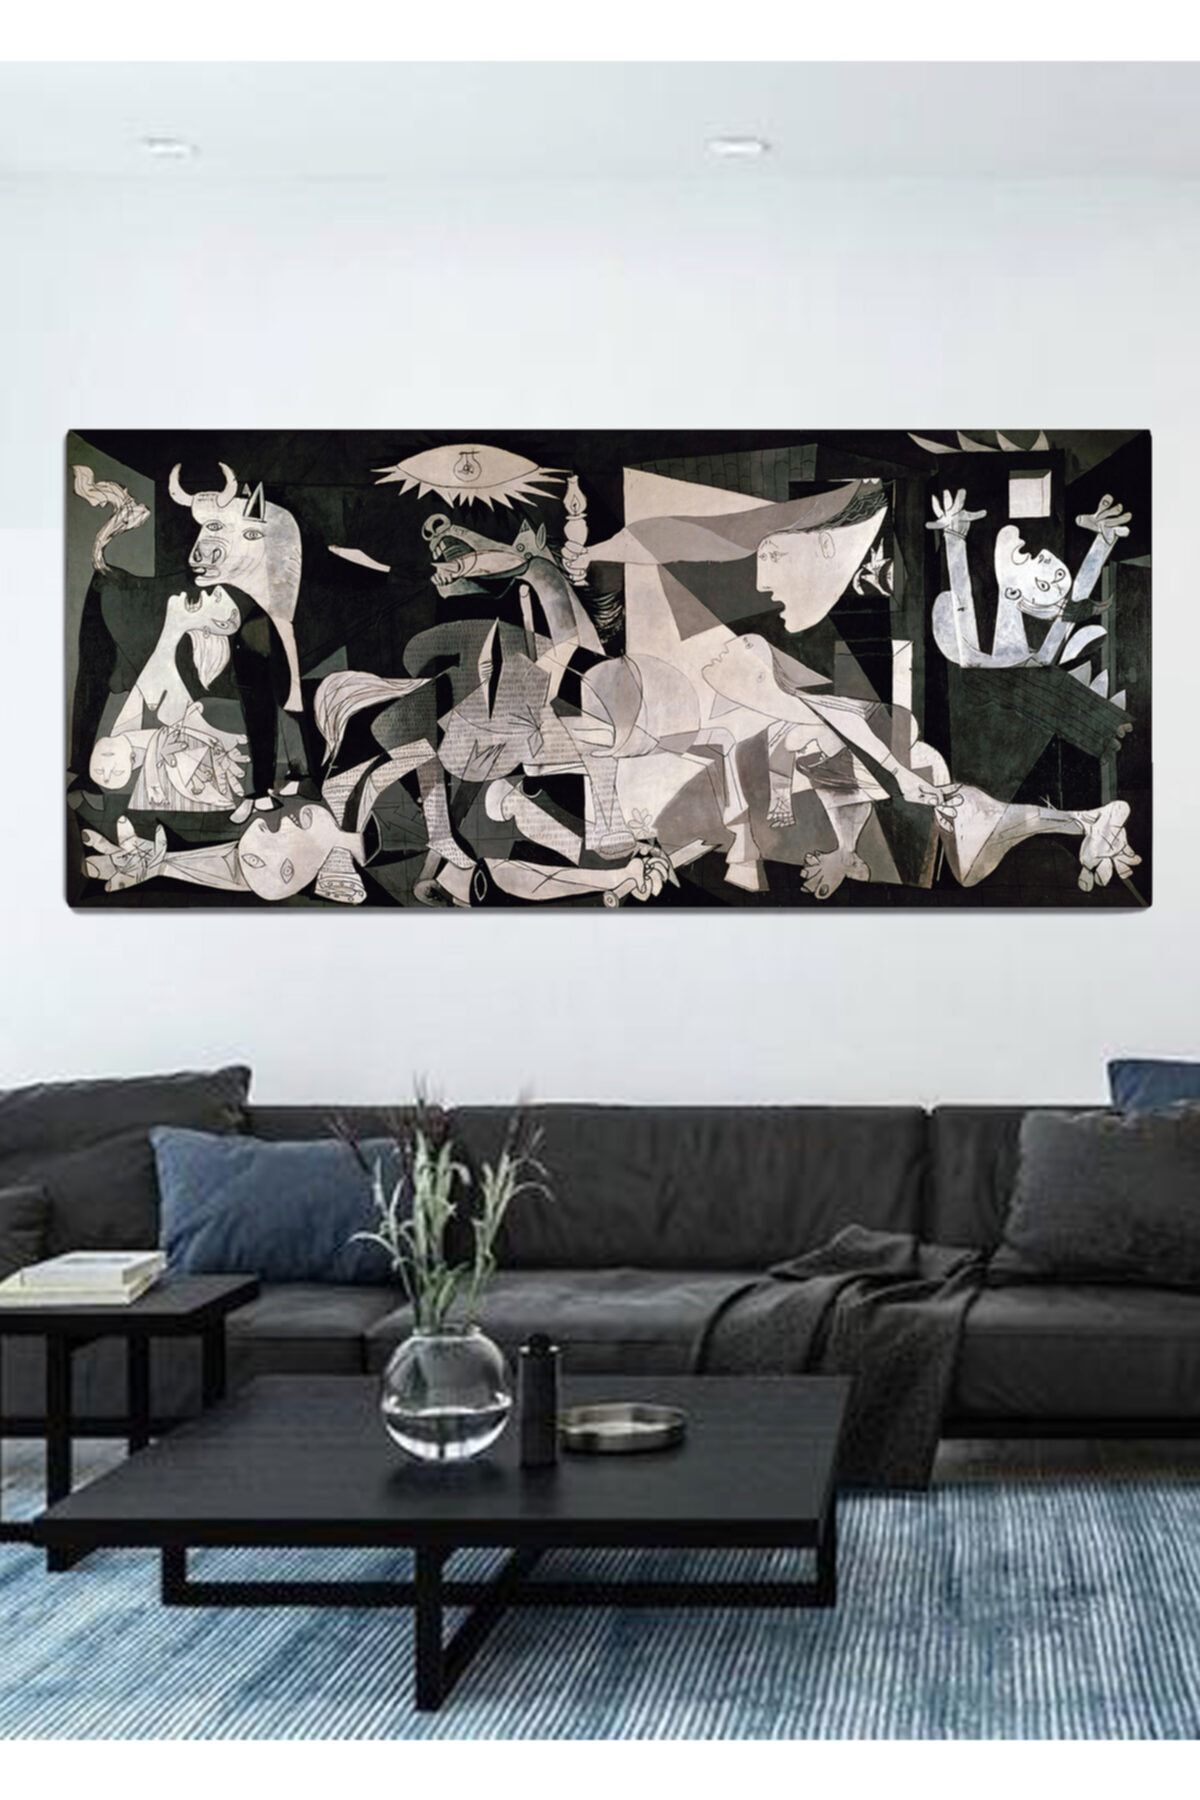 ColorVision Pablo Picasso Guernica Kanvas Tablo 40x100 cm